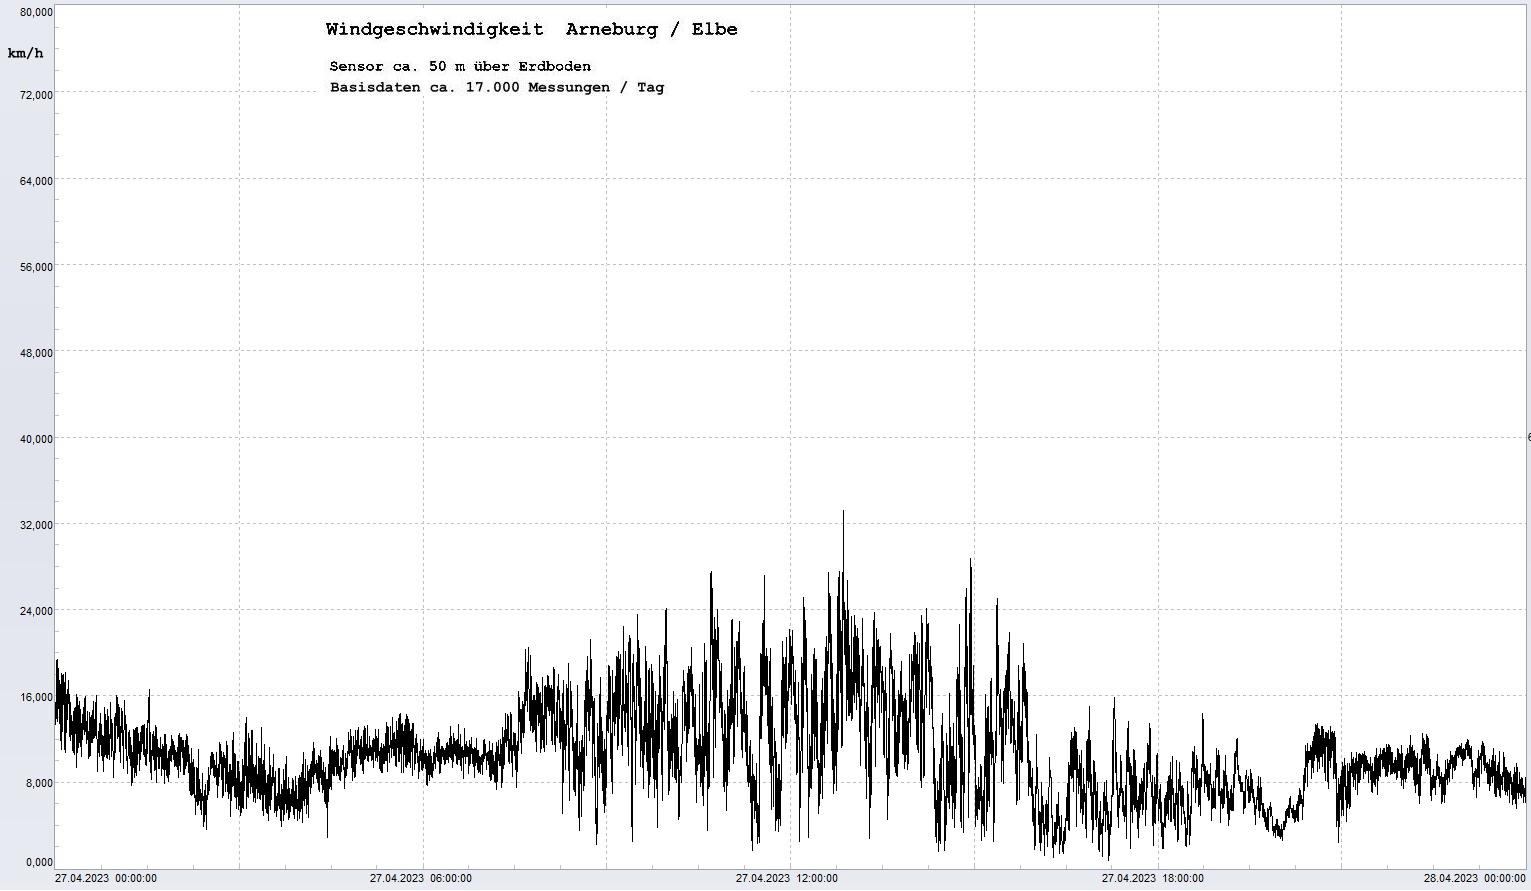 Arneburg Tages-Diagramm Winddaten, 27.04.2023
  Diagramm, Sensor auf Gebude, ca. 50 m ber Erdboden, Basis: 5s-Aufzeichnung